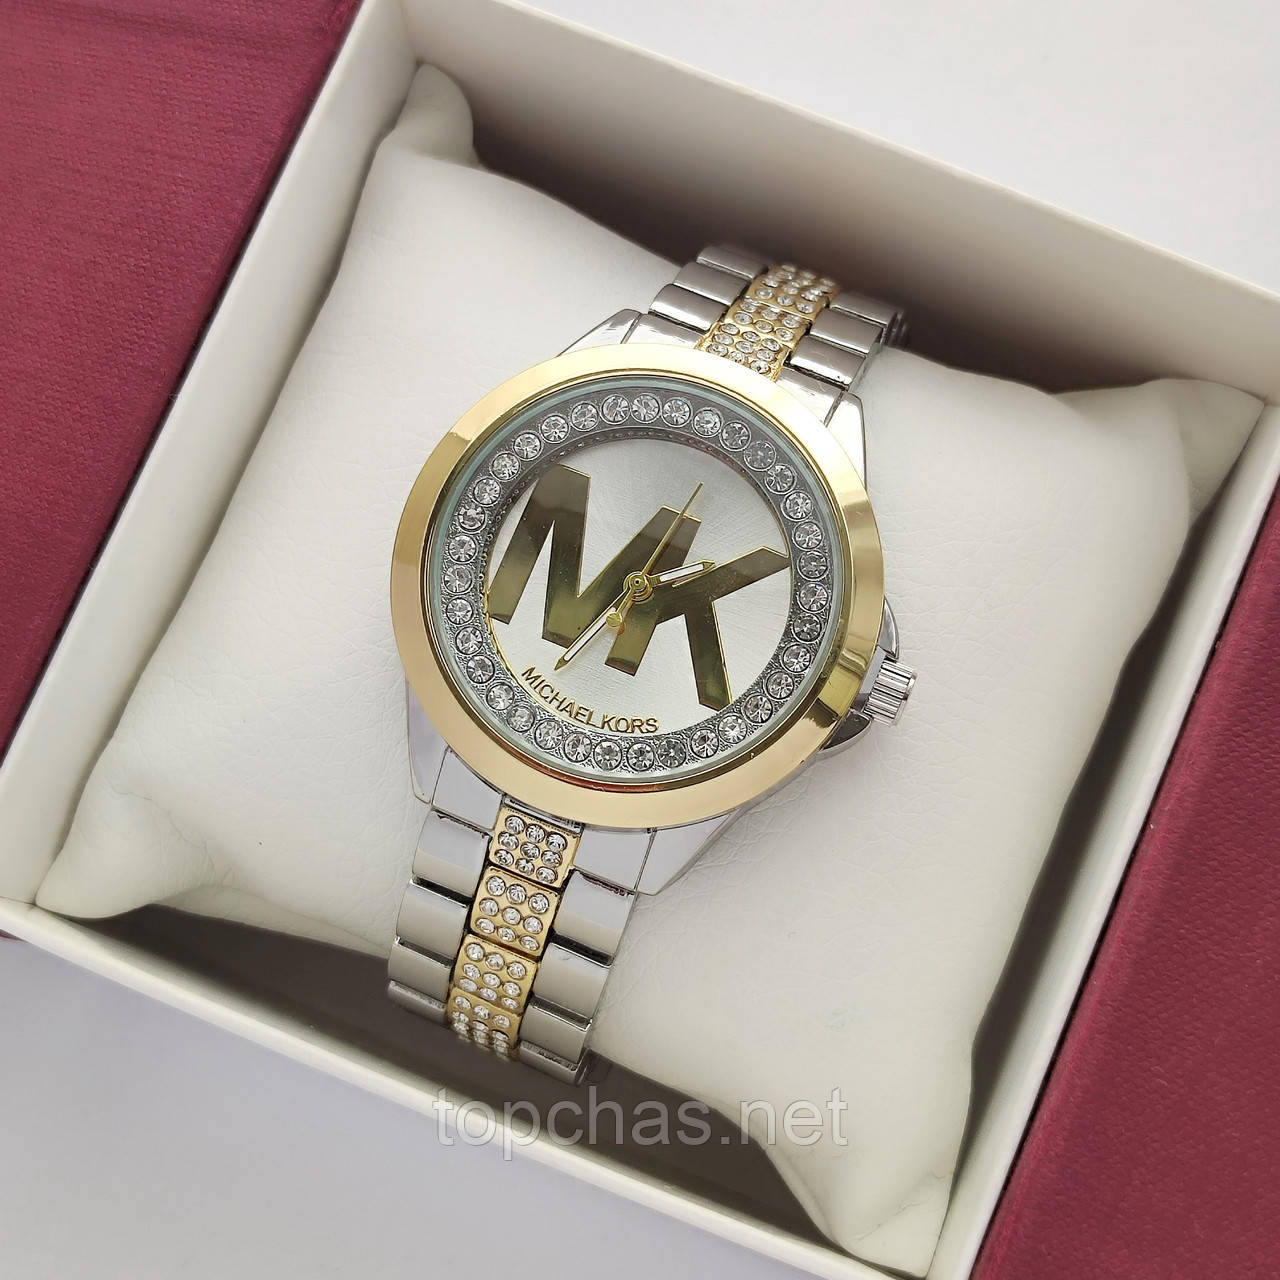 Жіночий наручний годинник Michael Kors (майкл корс) комбінований срібло-золото, камінчики - код 2378b